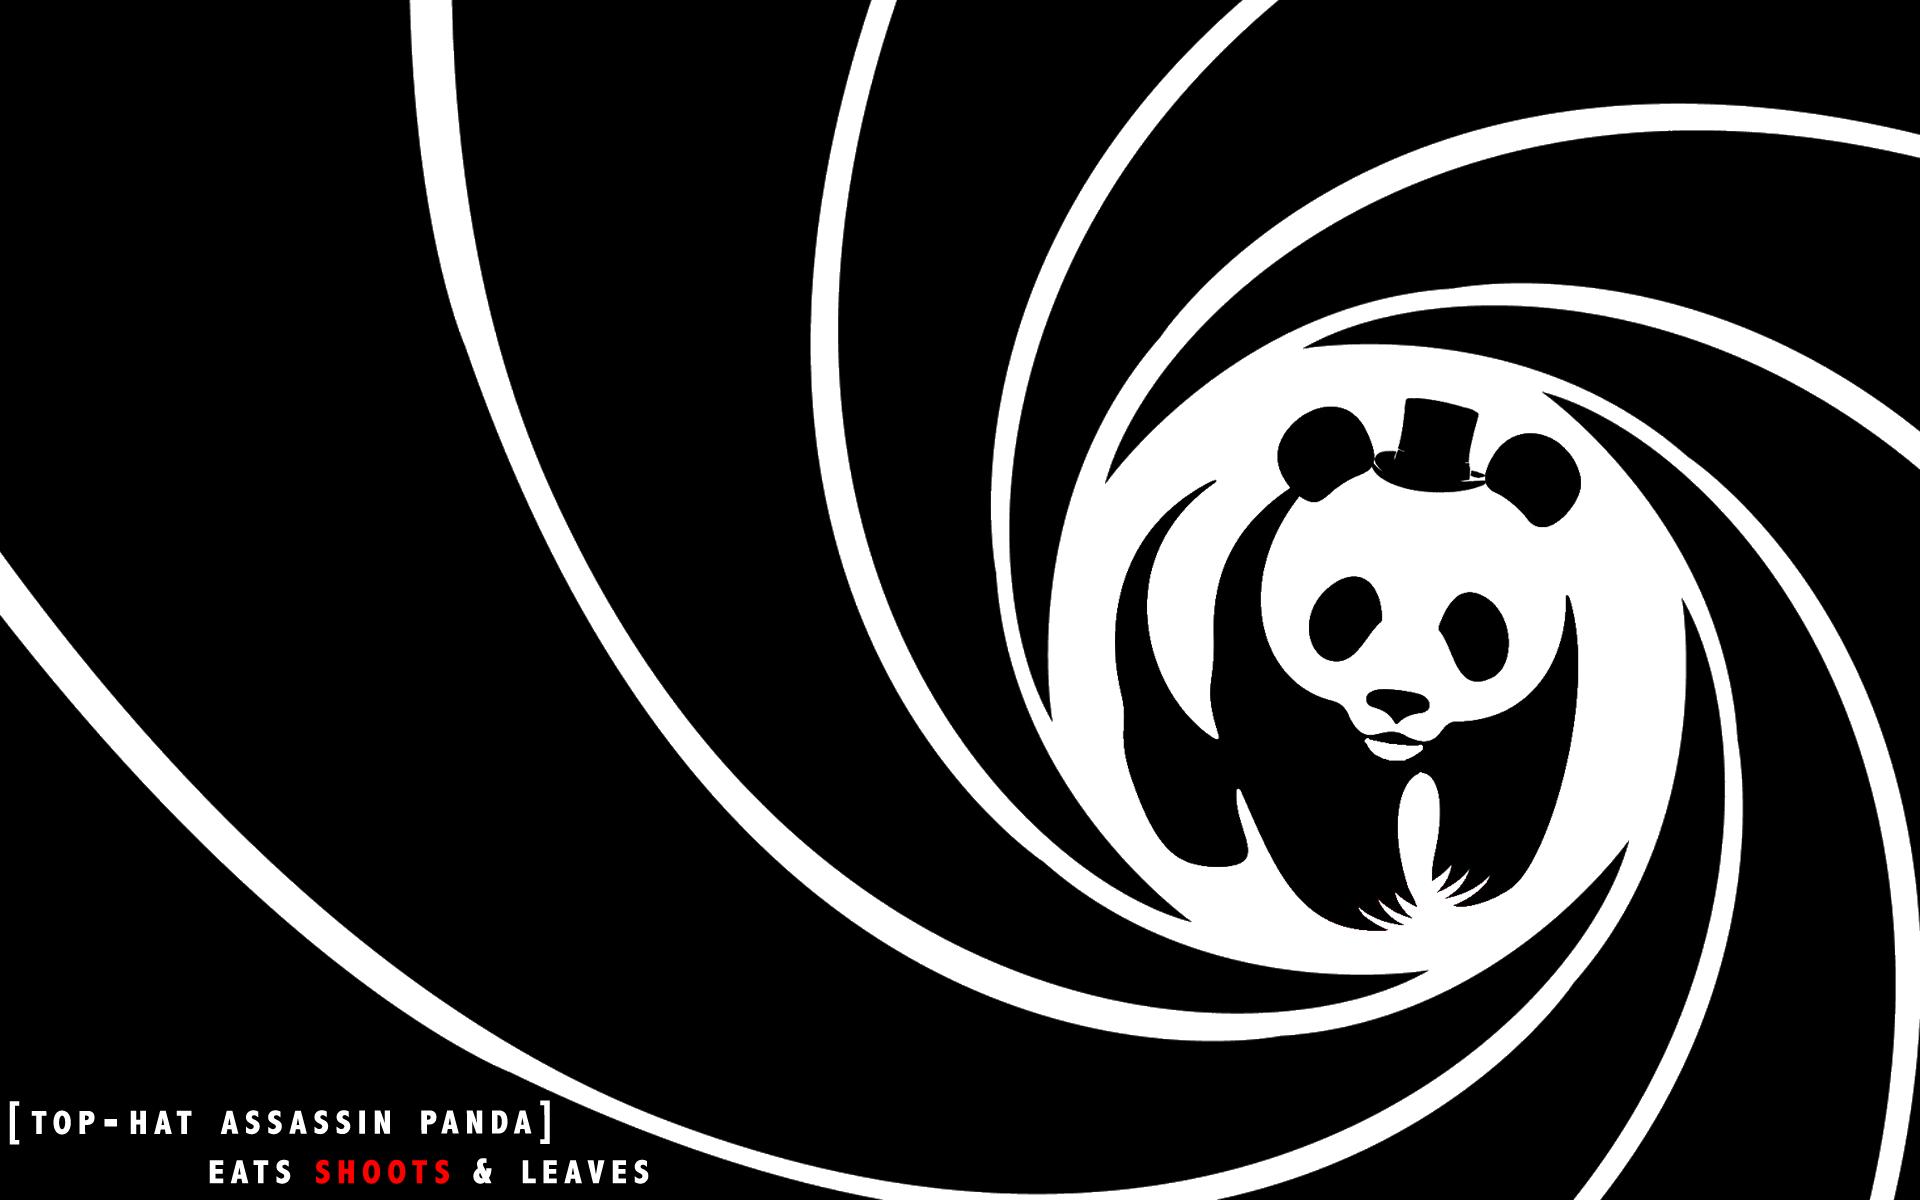 Black Spiral Logo - Wallpaper : illustration, humor, spiral, logo, circle, panda, parody